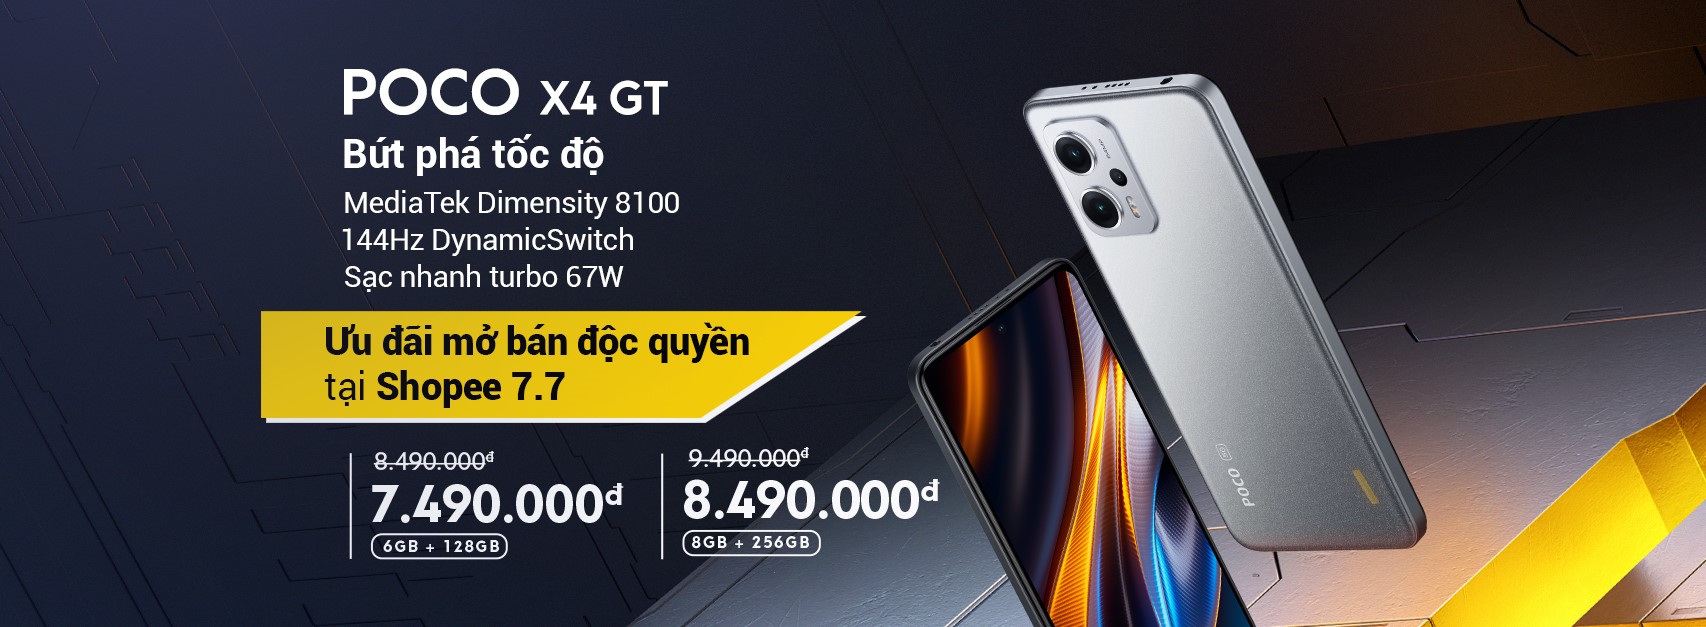 POCO X4 GT có màn hình 144Hz, mở bán với giá ưu đãi từ 7,49 triệu đồng - POCO X4 GT noi bat voi man hinh 144Hz mo ban voi gia uu dai tu 749 trieu dong 1